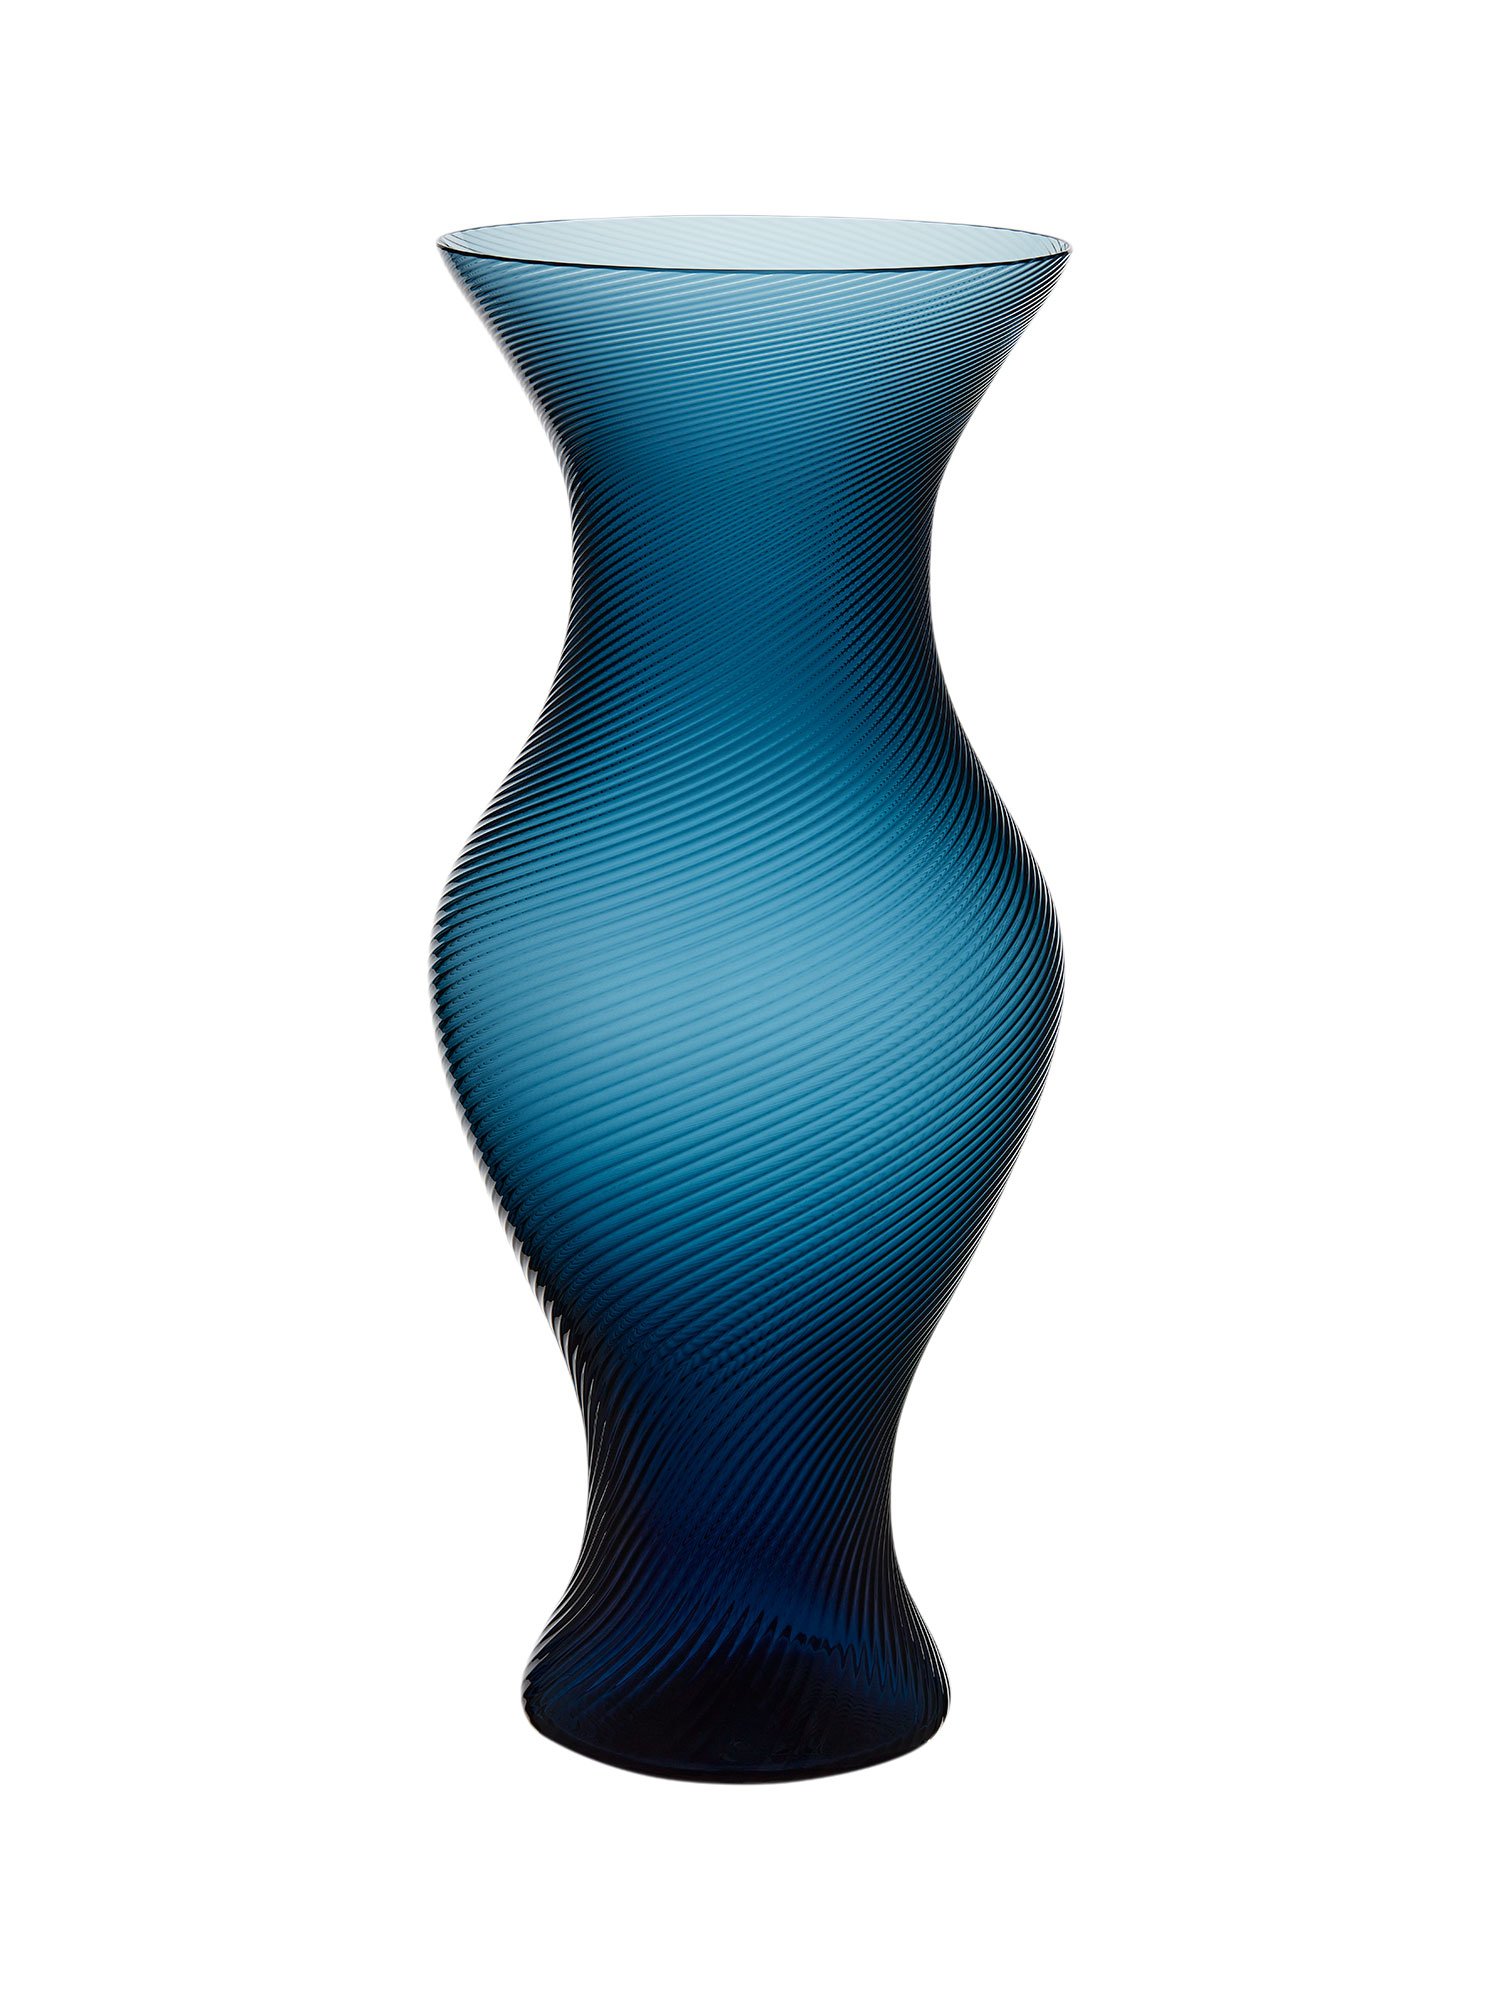 Idyllisch: Eine liebevolle Hommage an die Faszination von Christian Dior für Natur und Botanik ist die mundgeblasene Vase aus der »Granville«-Kollektion, die von Cordelia de Castellane entworfen wurde.